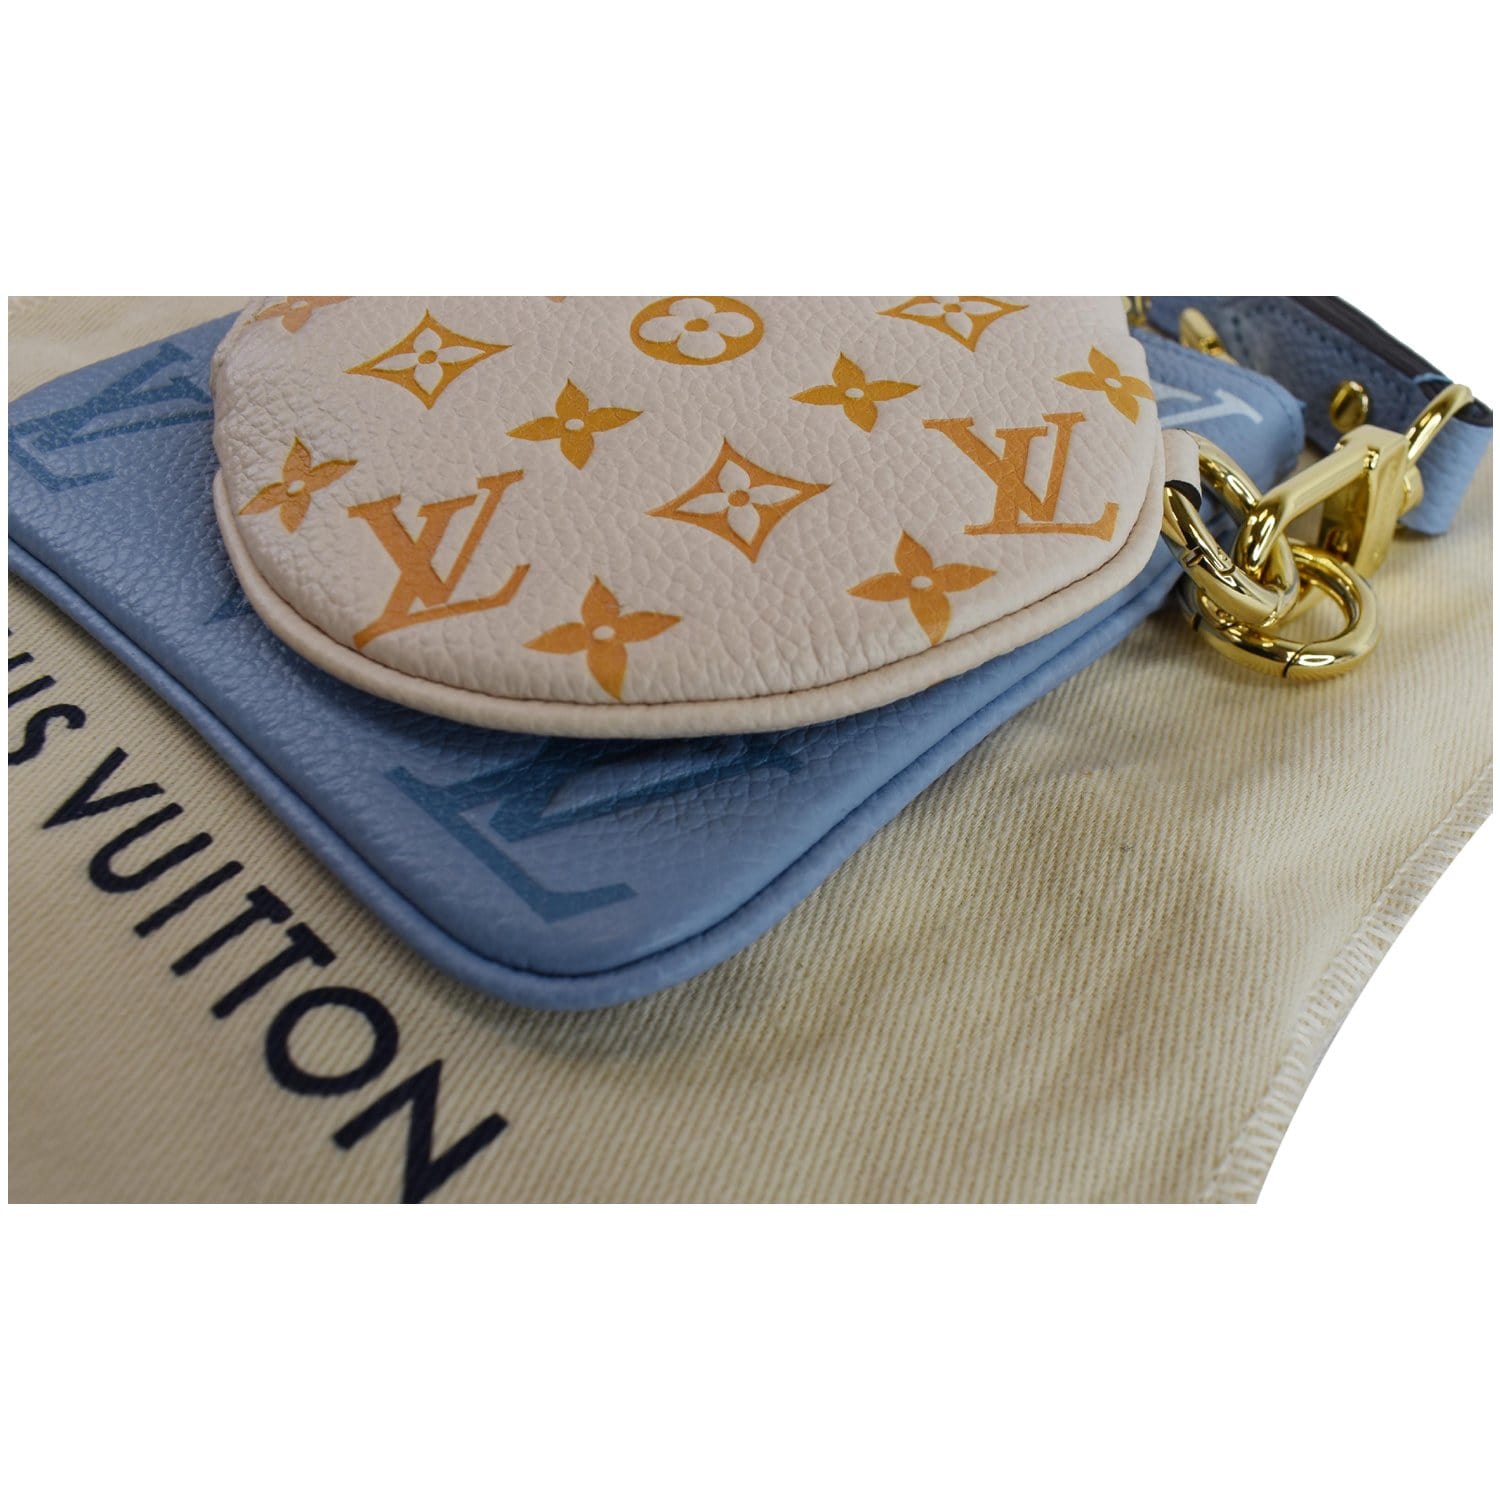 Louis Vuitton Blue, Pattern Print Summer Stardust Empreinte Monogram Multi PochetteL